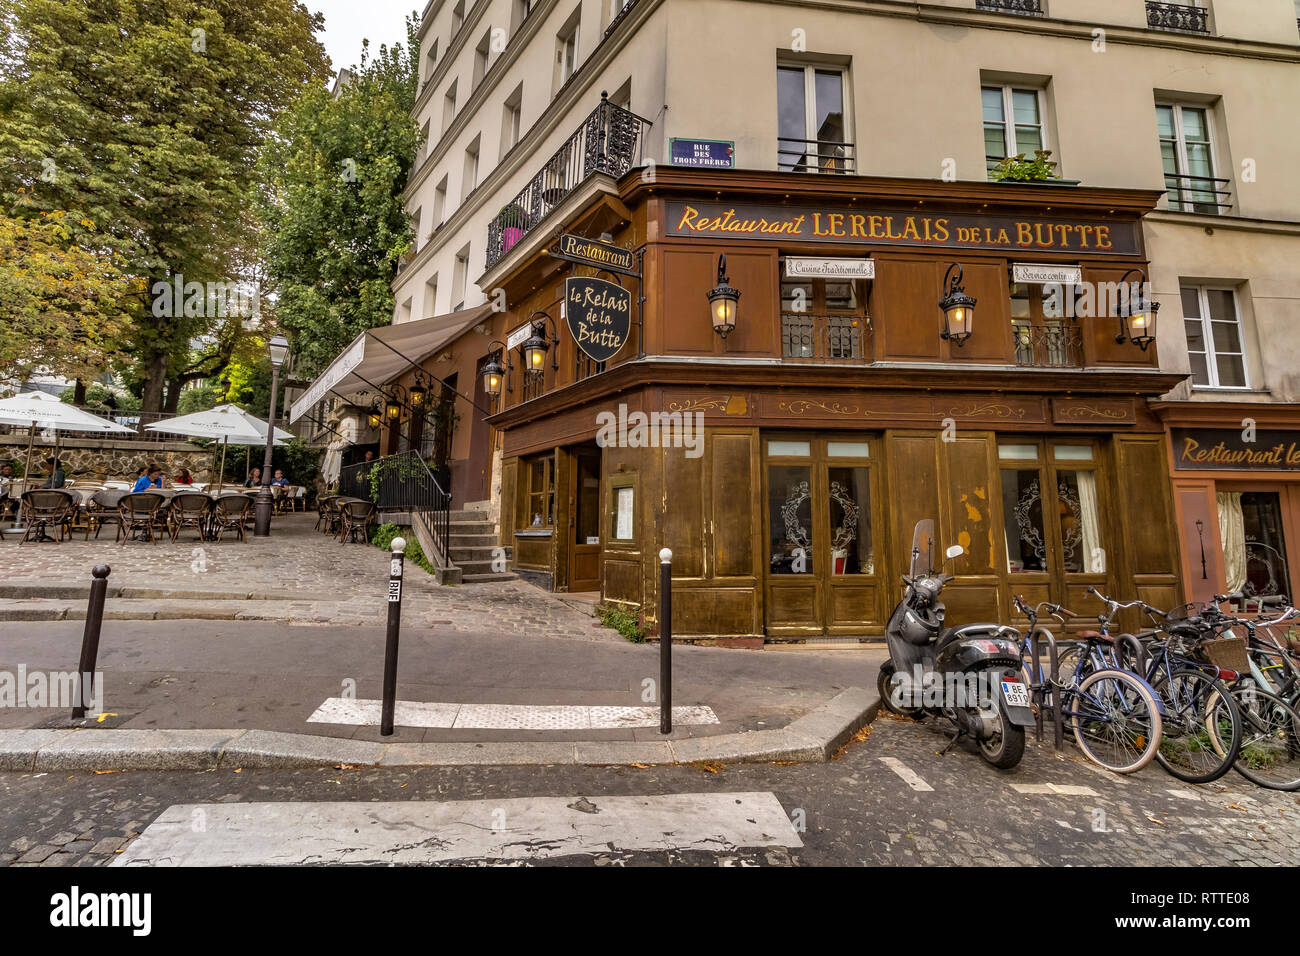 Bicycles and a scooter parked outside Restaurant  Le Relais de la butte, Montmartre ,Paris Stock Photo